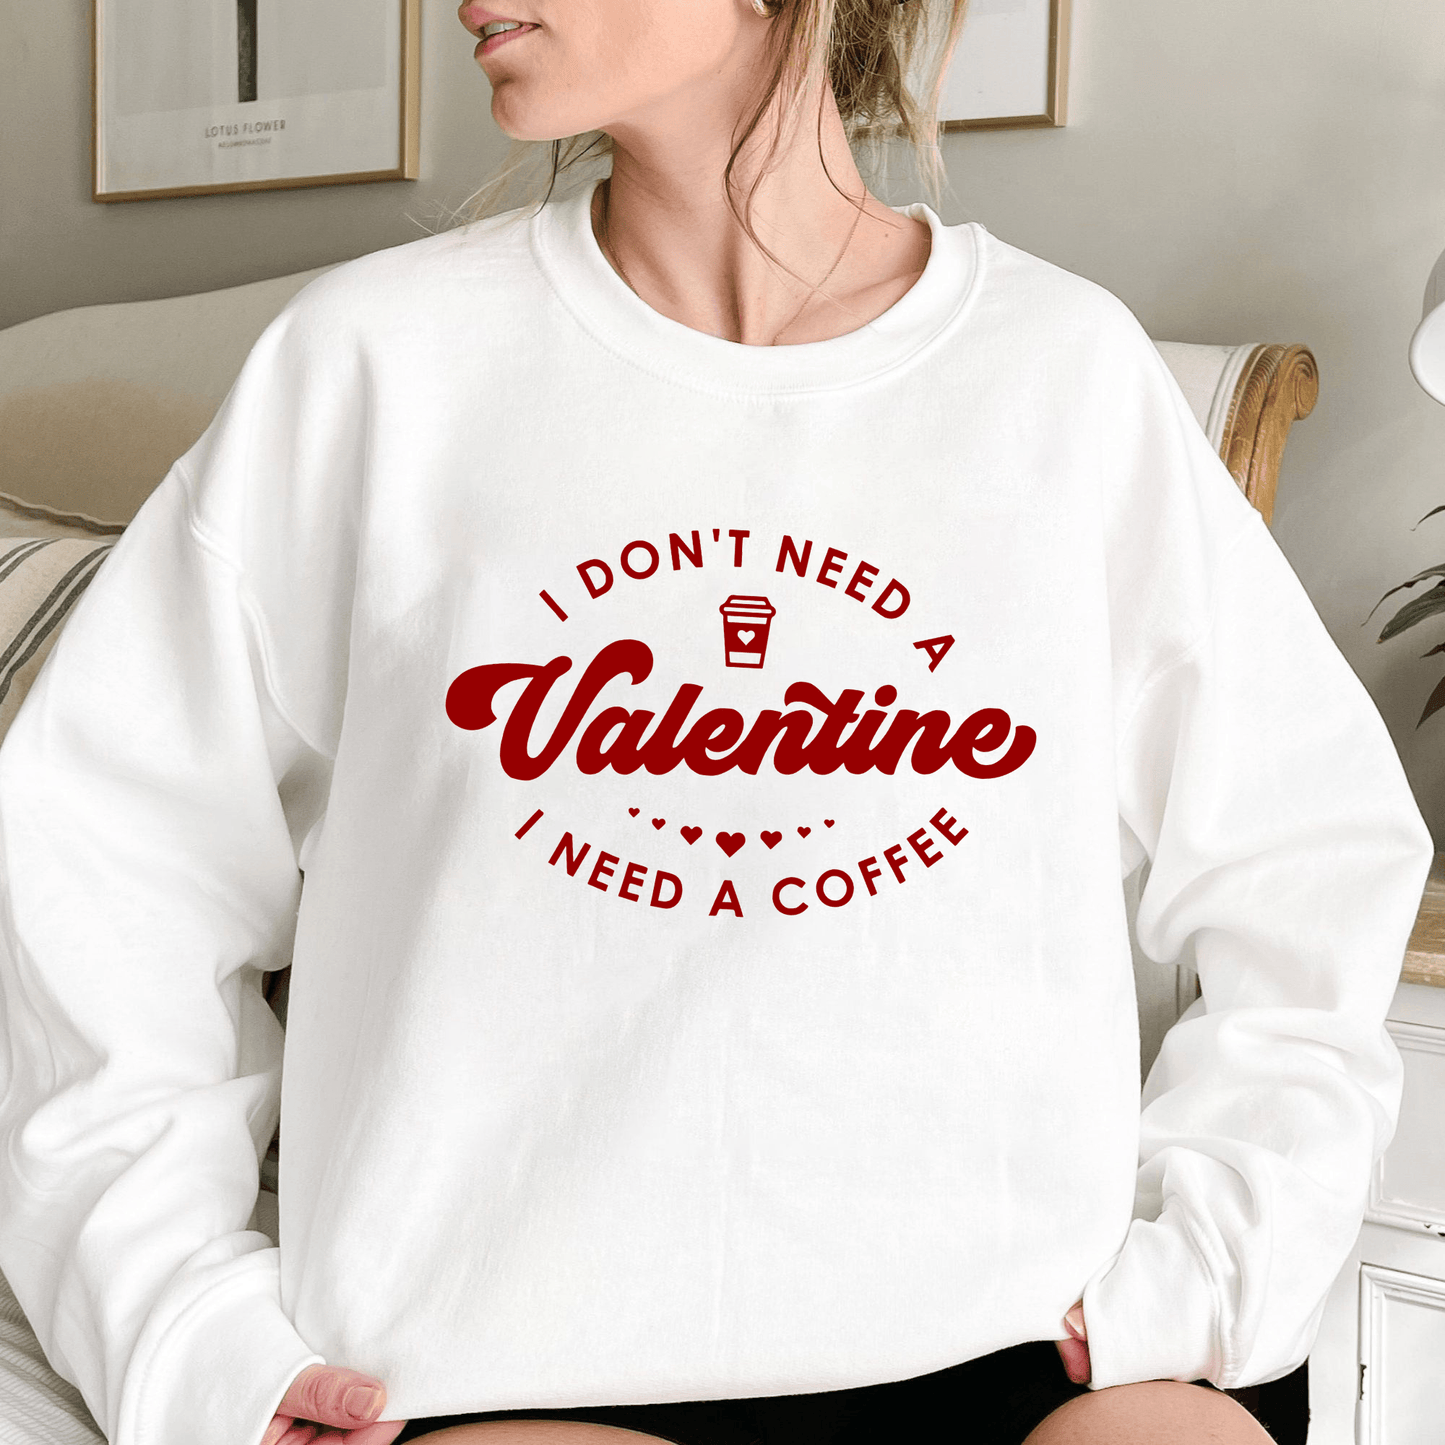 Kaffee statt Valentine Sweatshirt - Für Liebhaber des schwarzen Goldes - GiftHaus